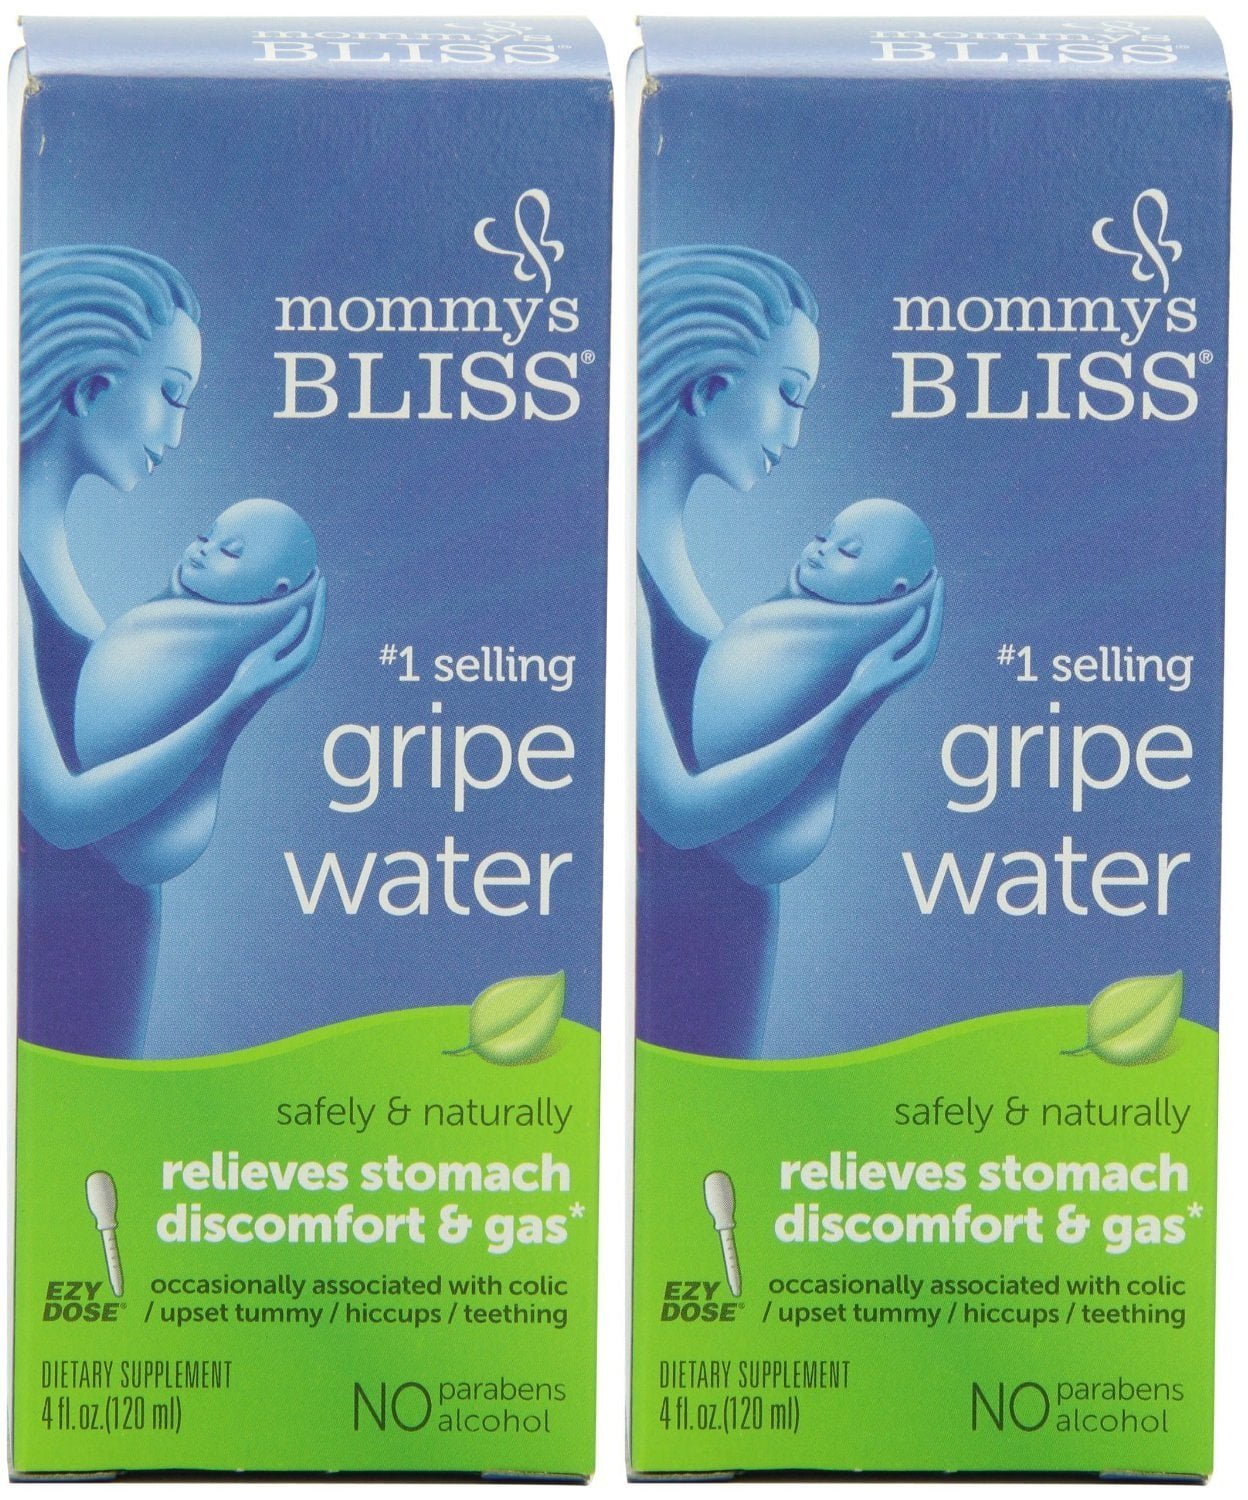 mommy's bliss gripe water walmart